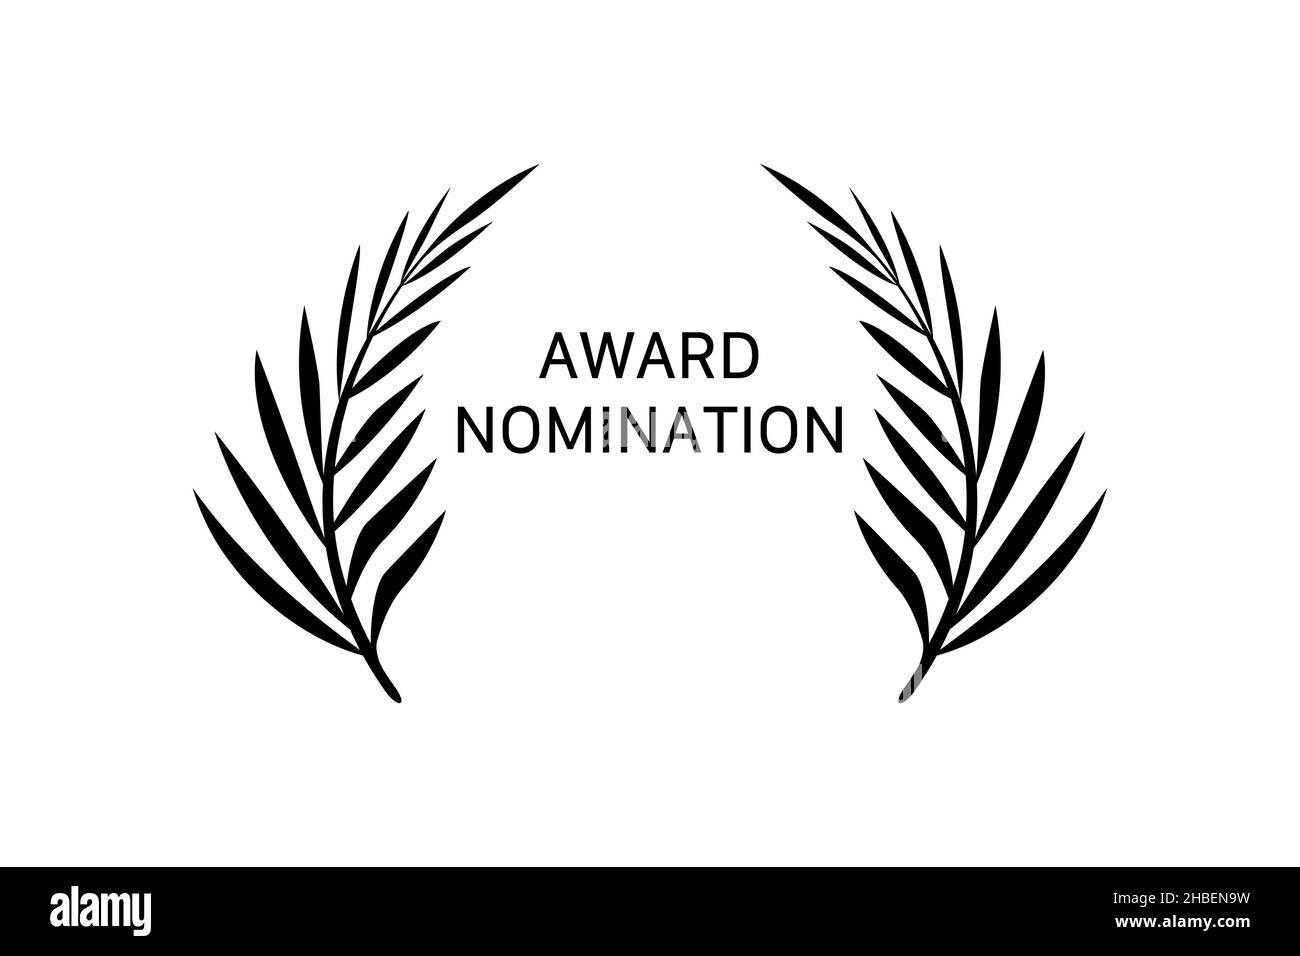 Modello di design del logo per la nomina del premio. Rami neri su sfondo bianco. Segno di riconoscimento con foglie. Illustrazione vettoriale isolata Illustrazione Vettoriale